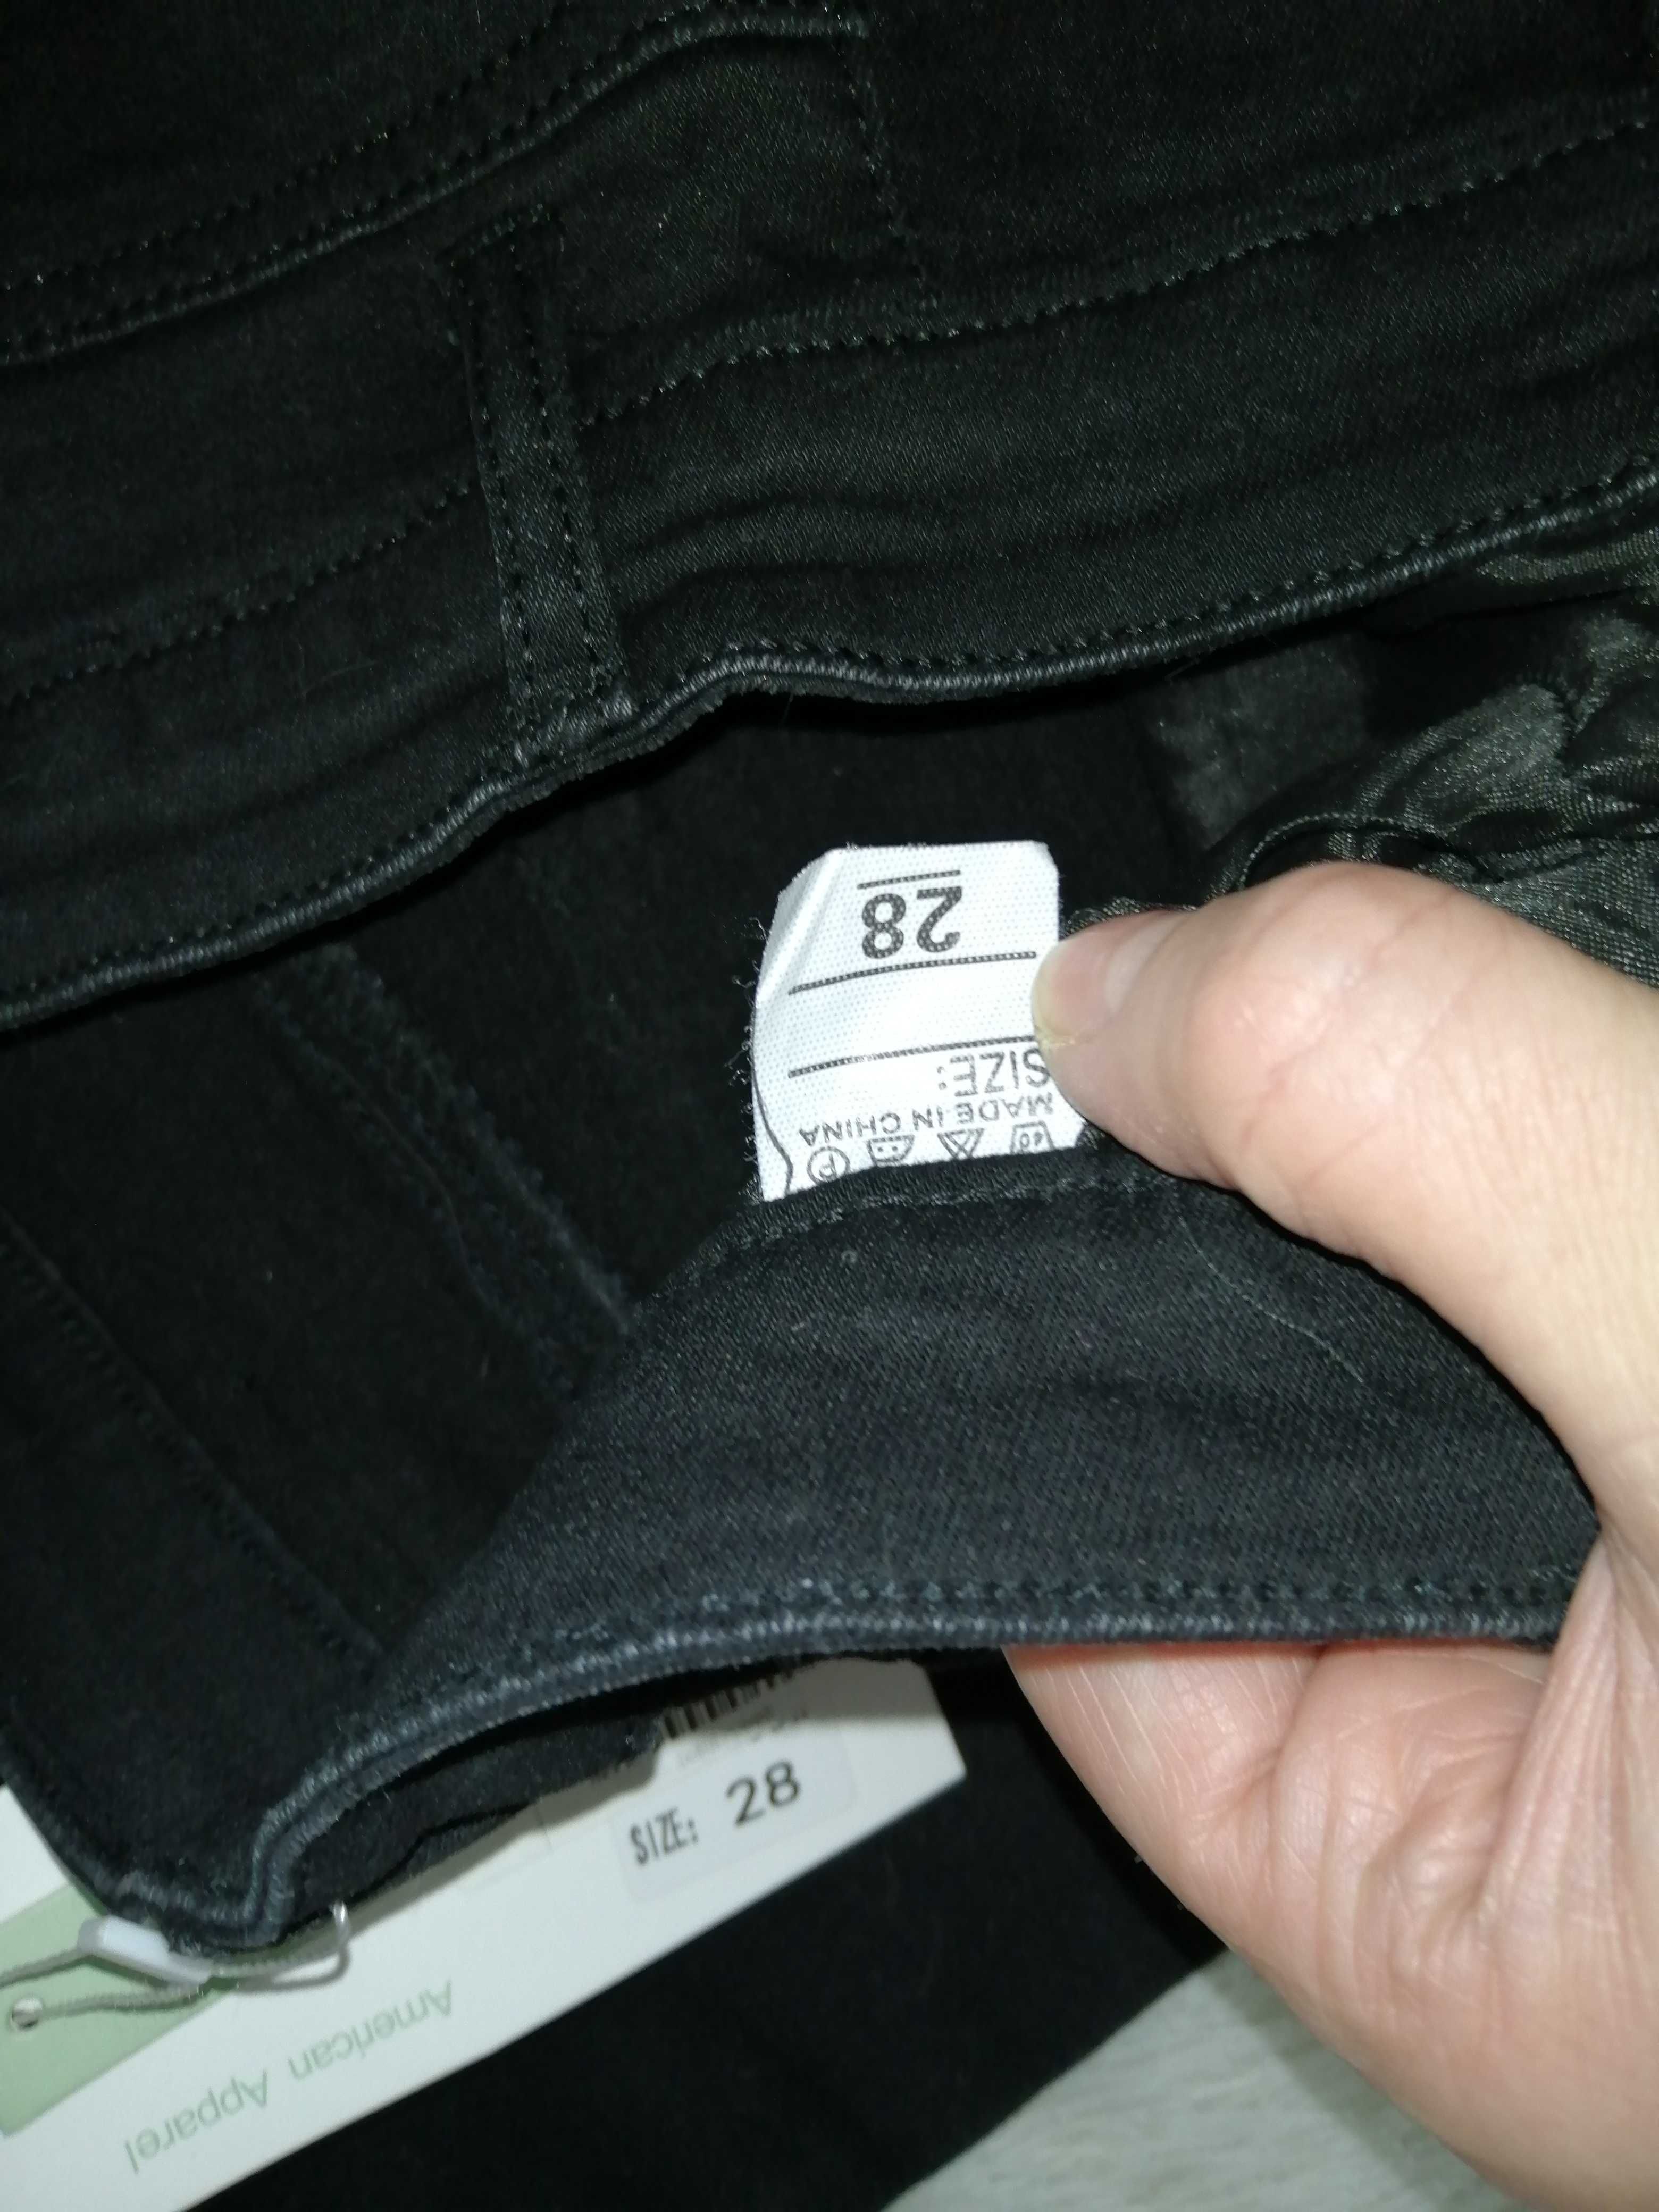 Продам джинсы-резинки НОВЫЕ «DENIM» чёрные размер 28 смотрите описание